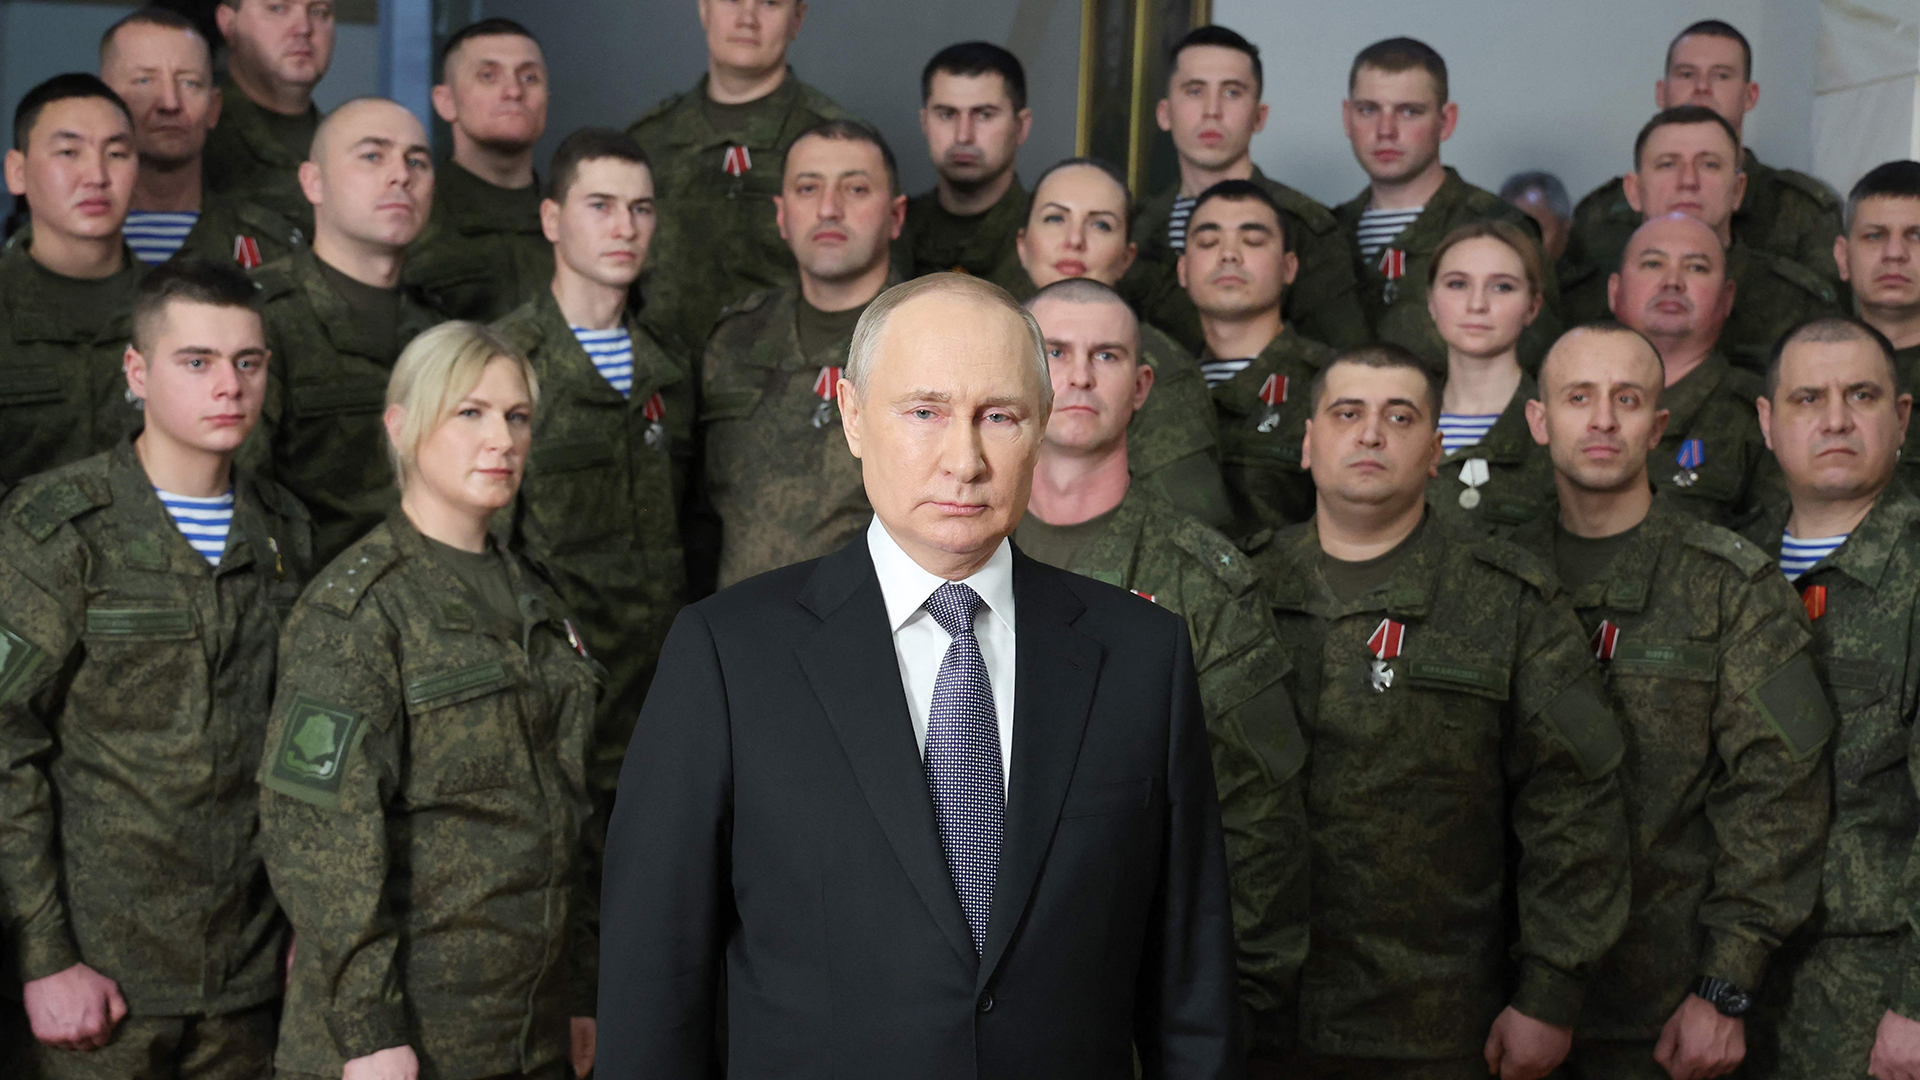 Putin bei Neujahrsansprache - im Hintergrund Männer und Frauen in Militäruniform | AFP